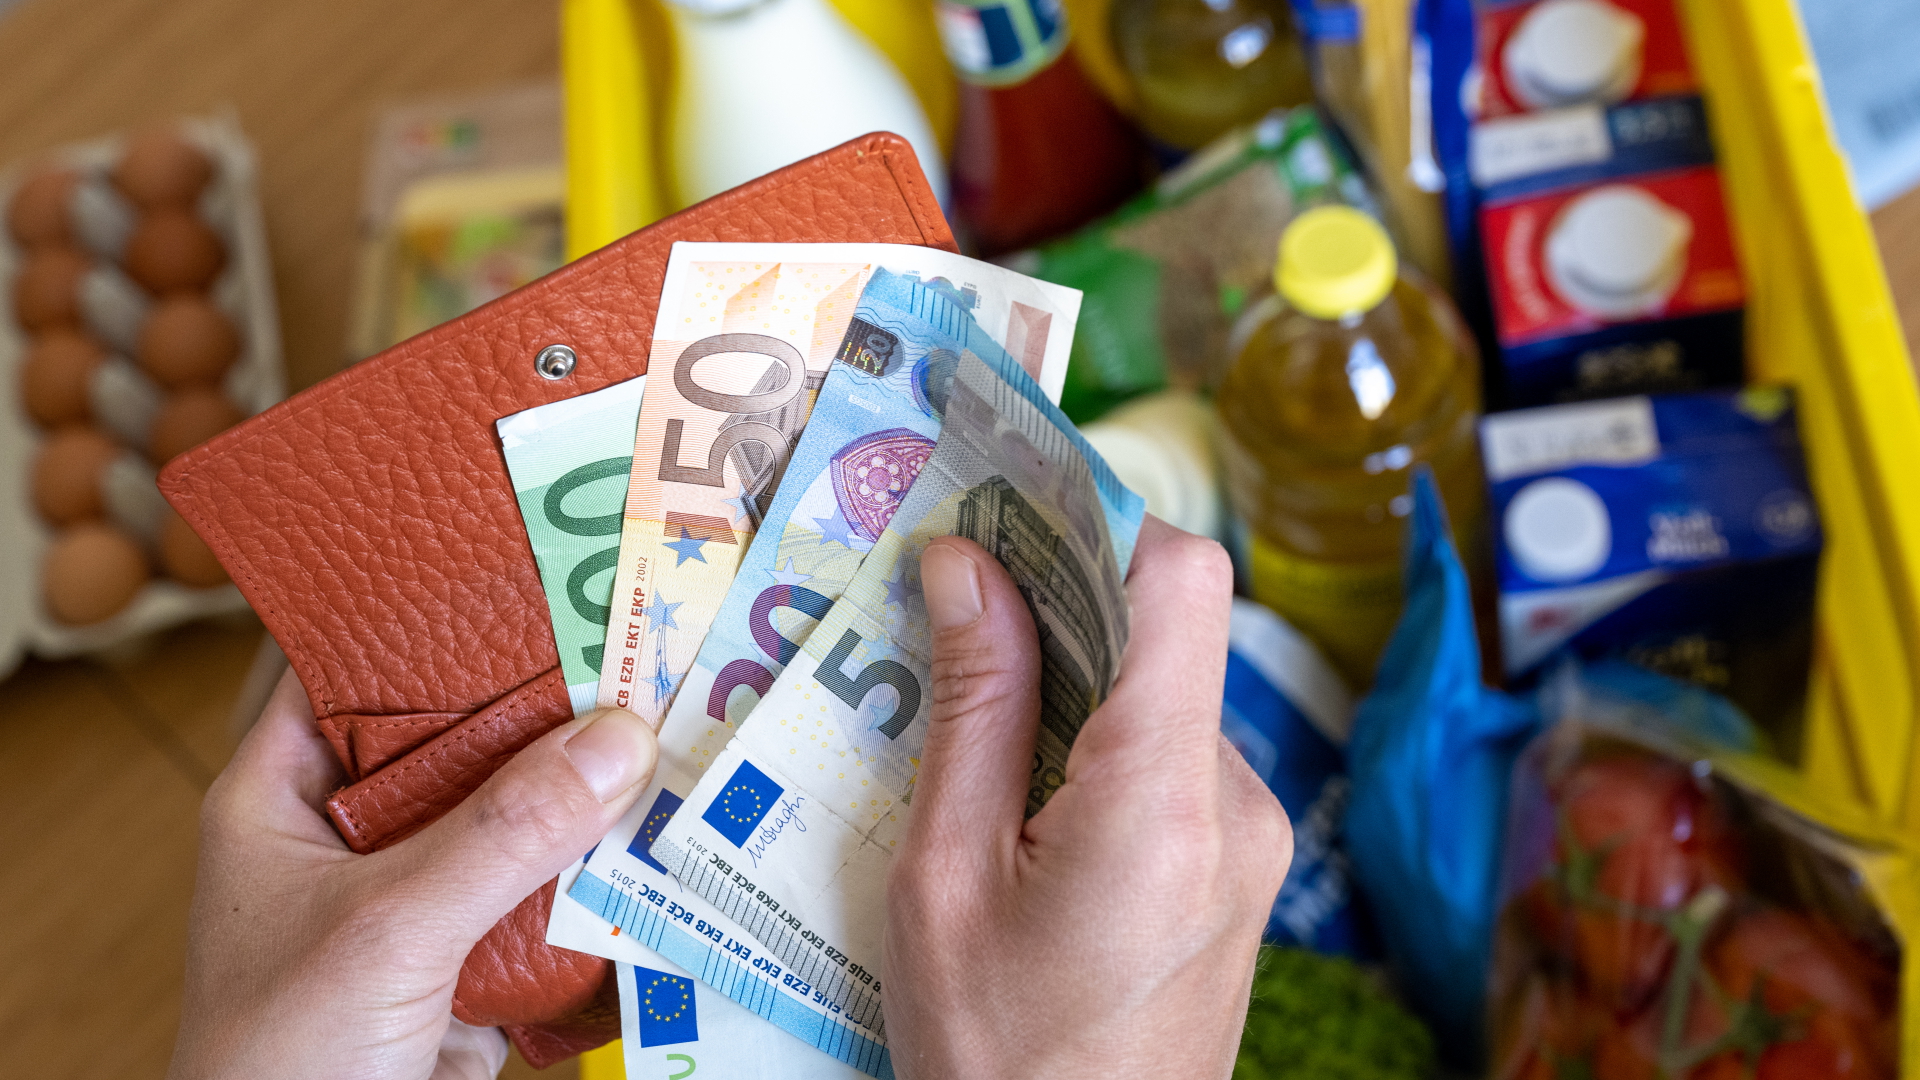 Hände ziehen einige Geldscheine aus einem Portemonnaie, darunter verschwommen ein gefüllter Einkaufskorb.